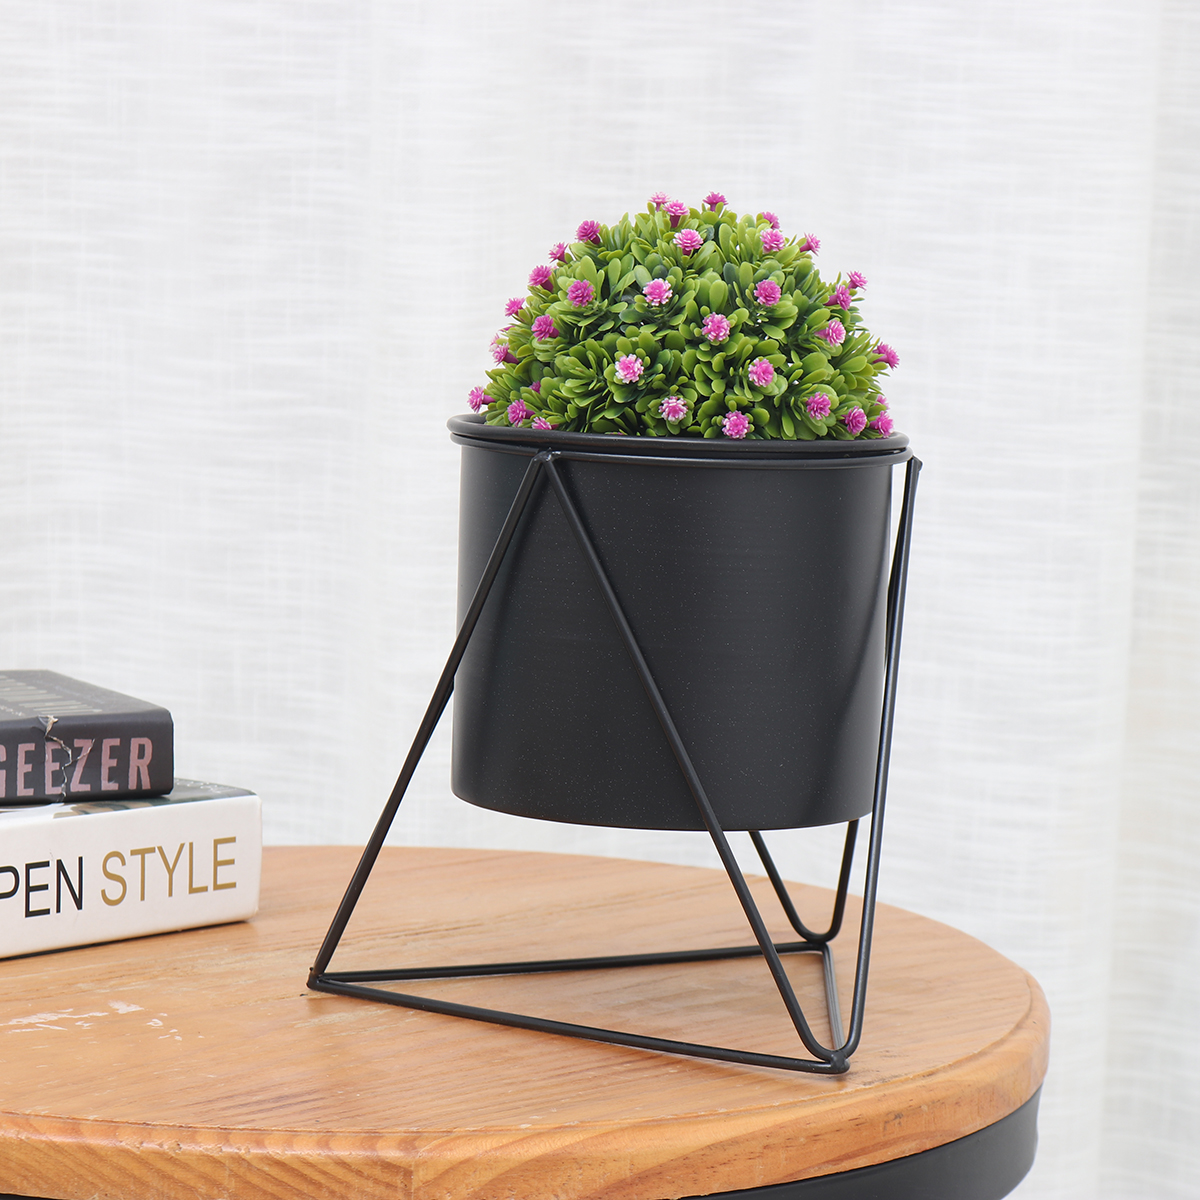 Metal-Flower-Pot-Stand-Indoor-Outdoor-Garden-Balcony-Desktop-Plant-Rack-Iron-Flower-Pot-Shelf-Home-O-1787537-10